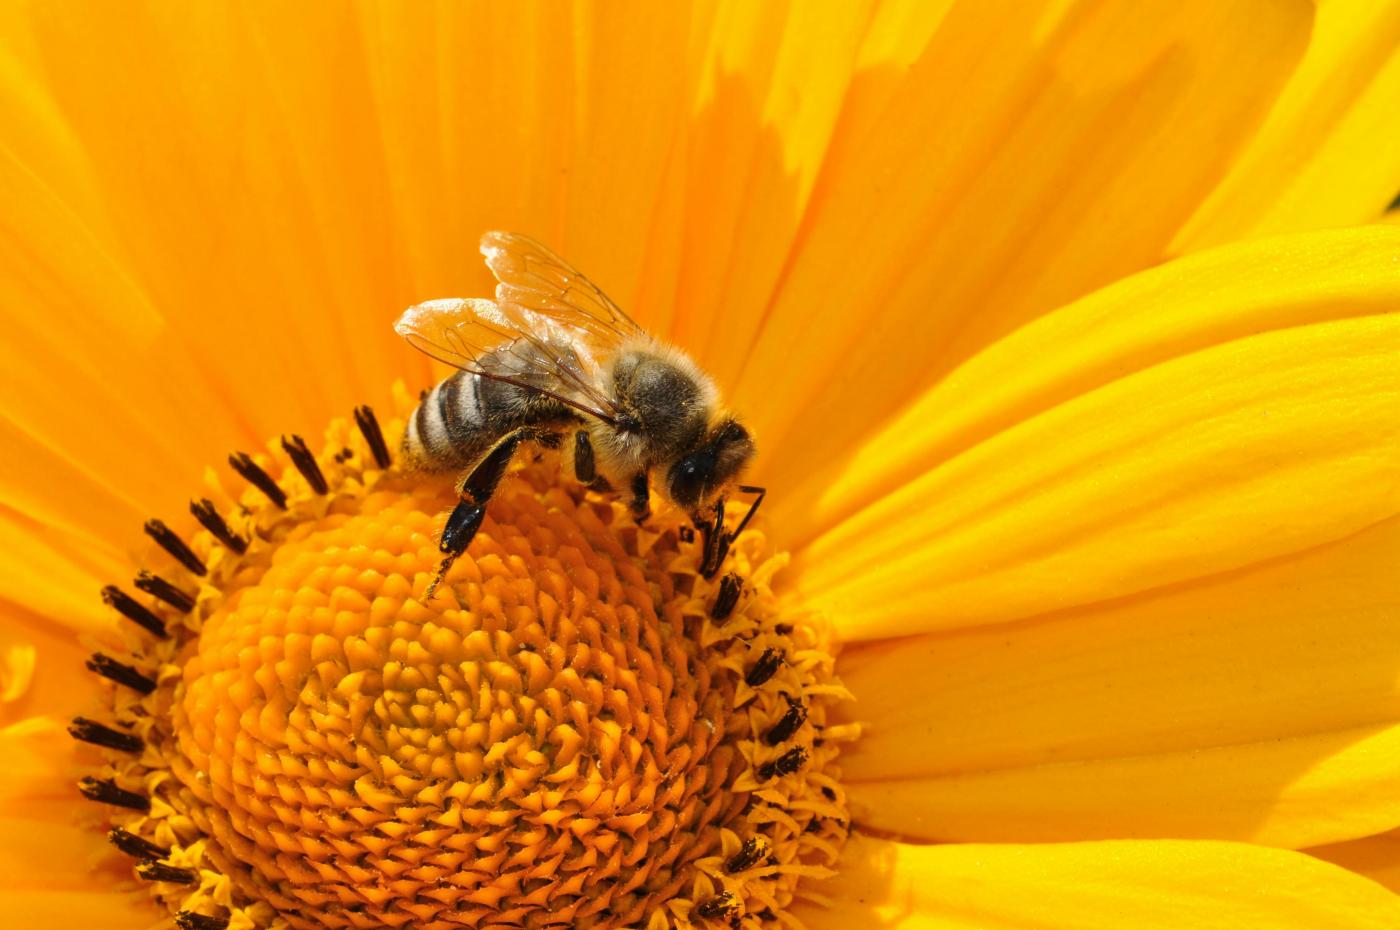 Allergies au pollen